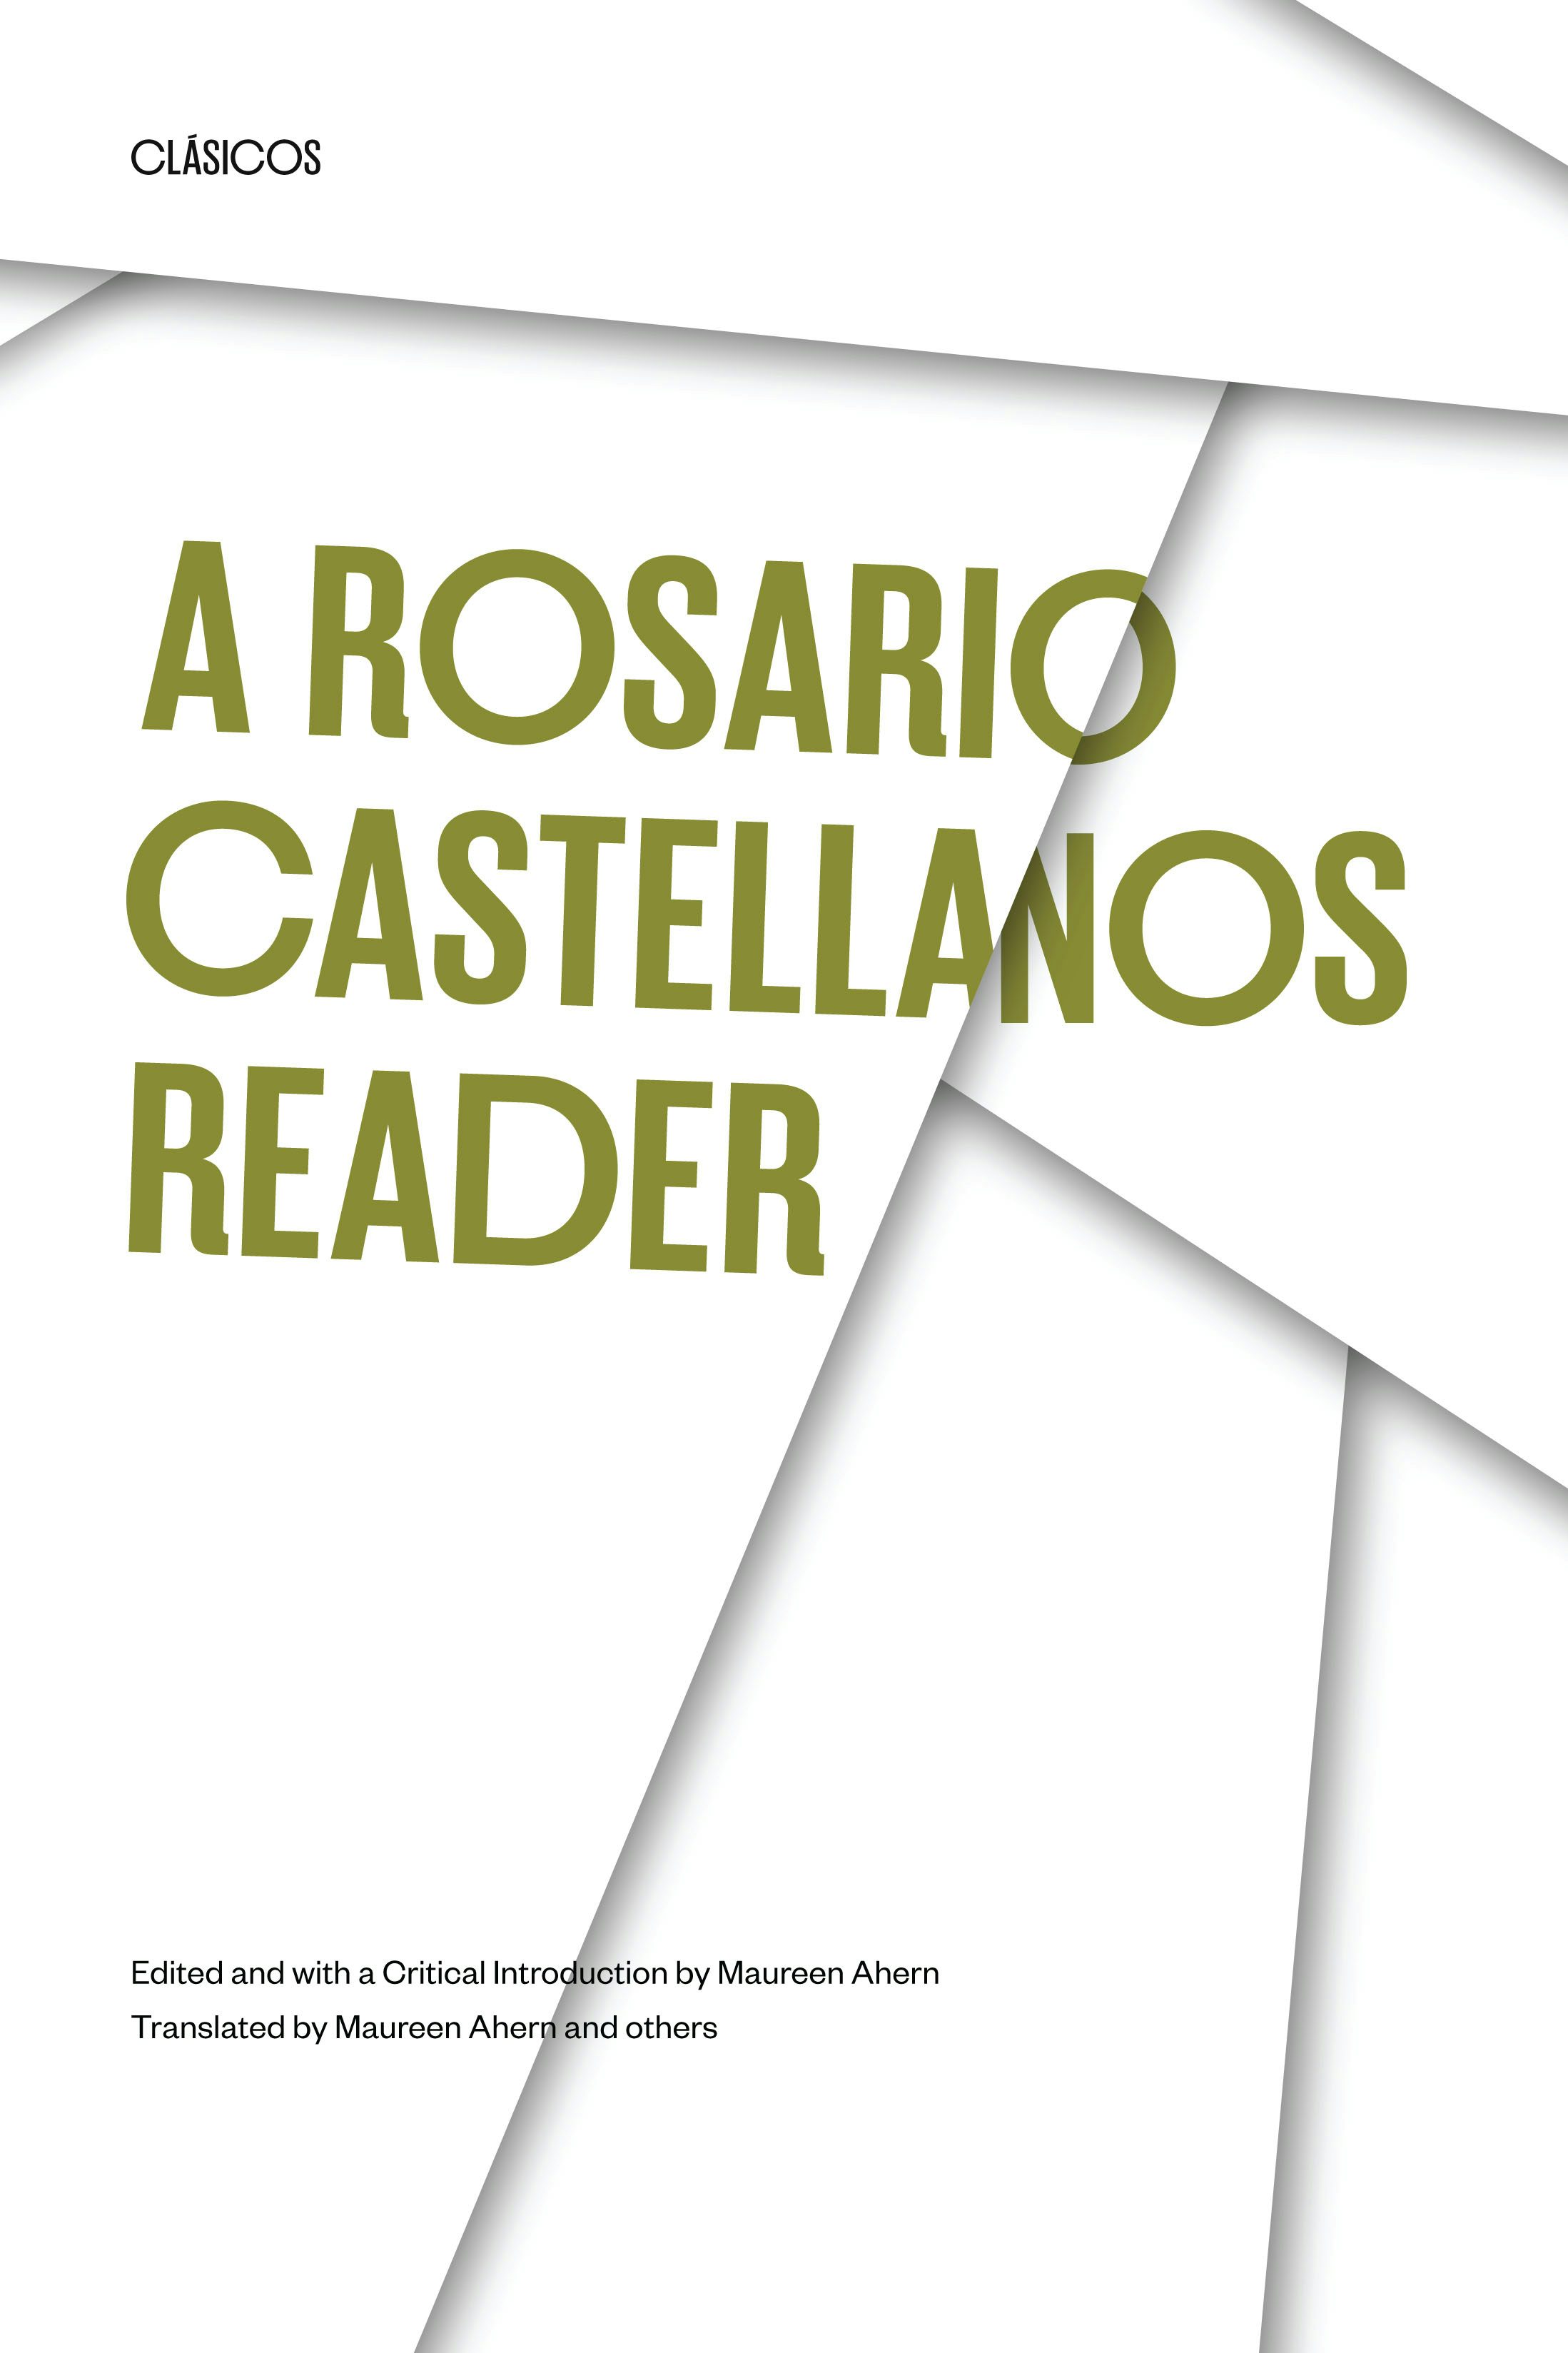 Book cover: "A Rosario Catellanos Reader."